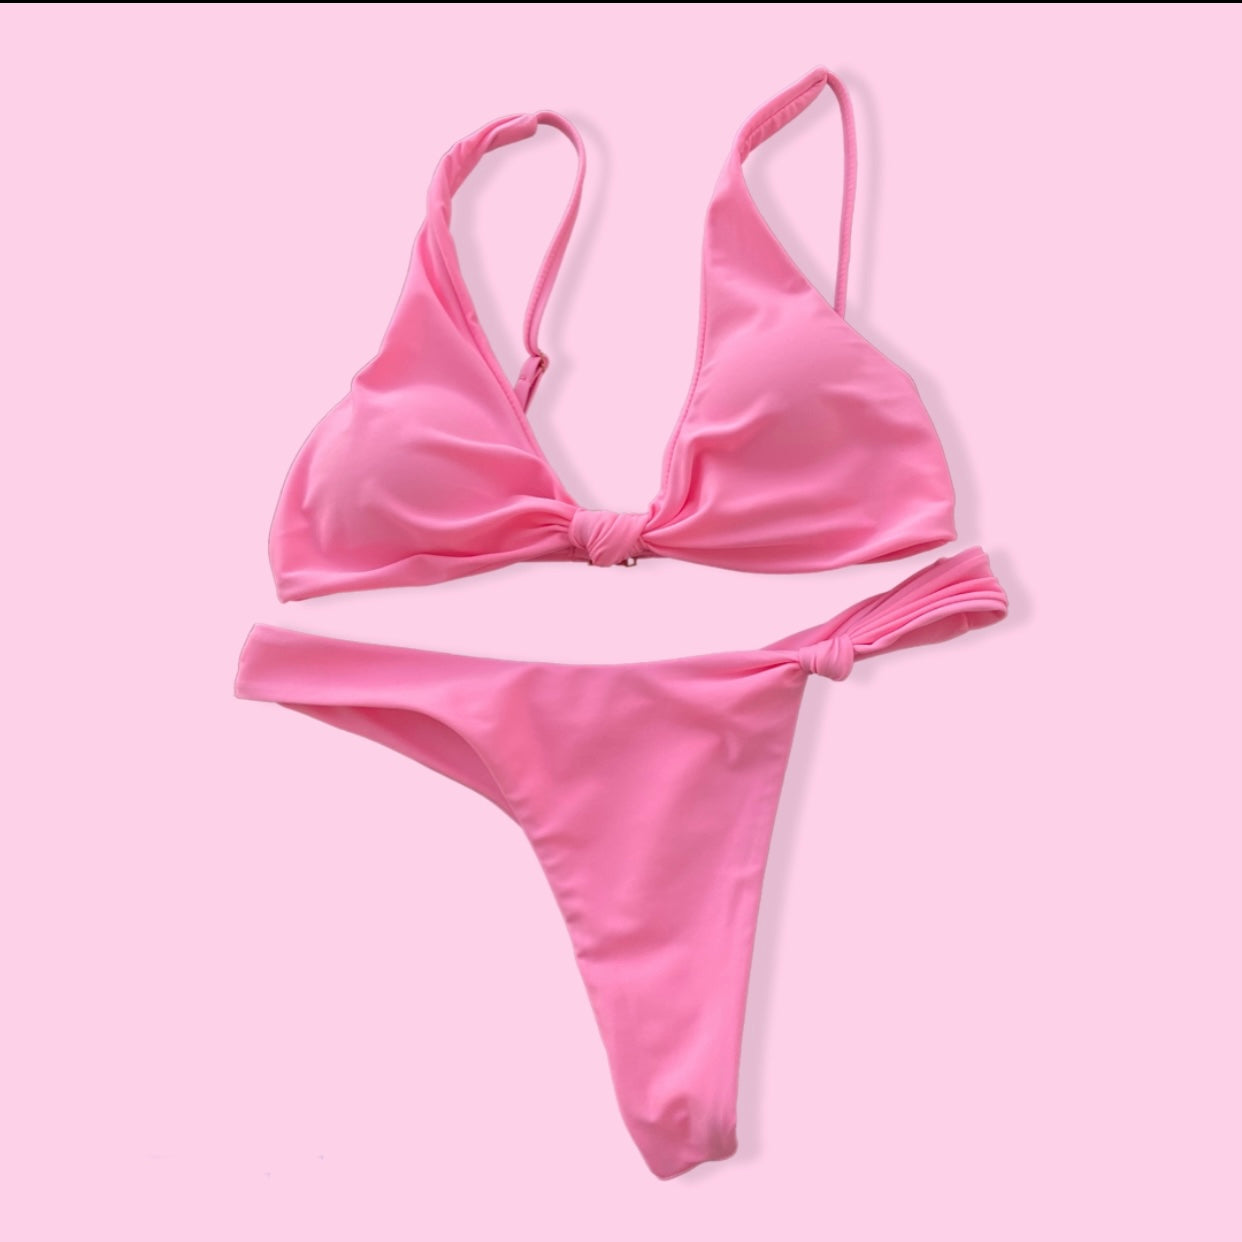 Knot It Thong Bikini Set ($20) - Cotton Candy Pink